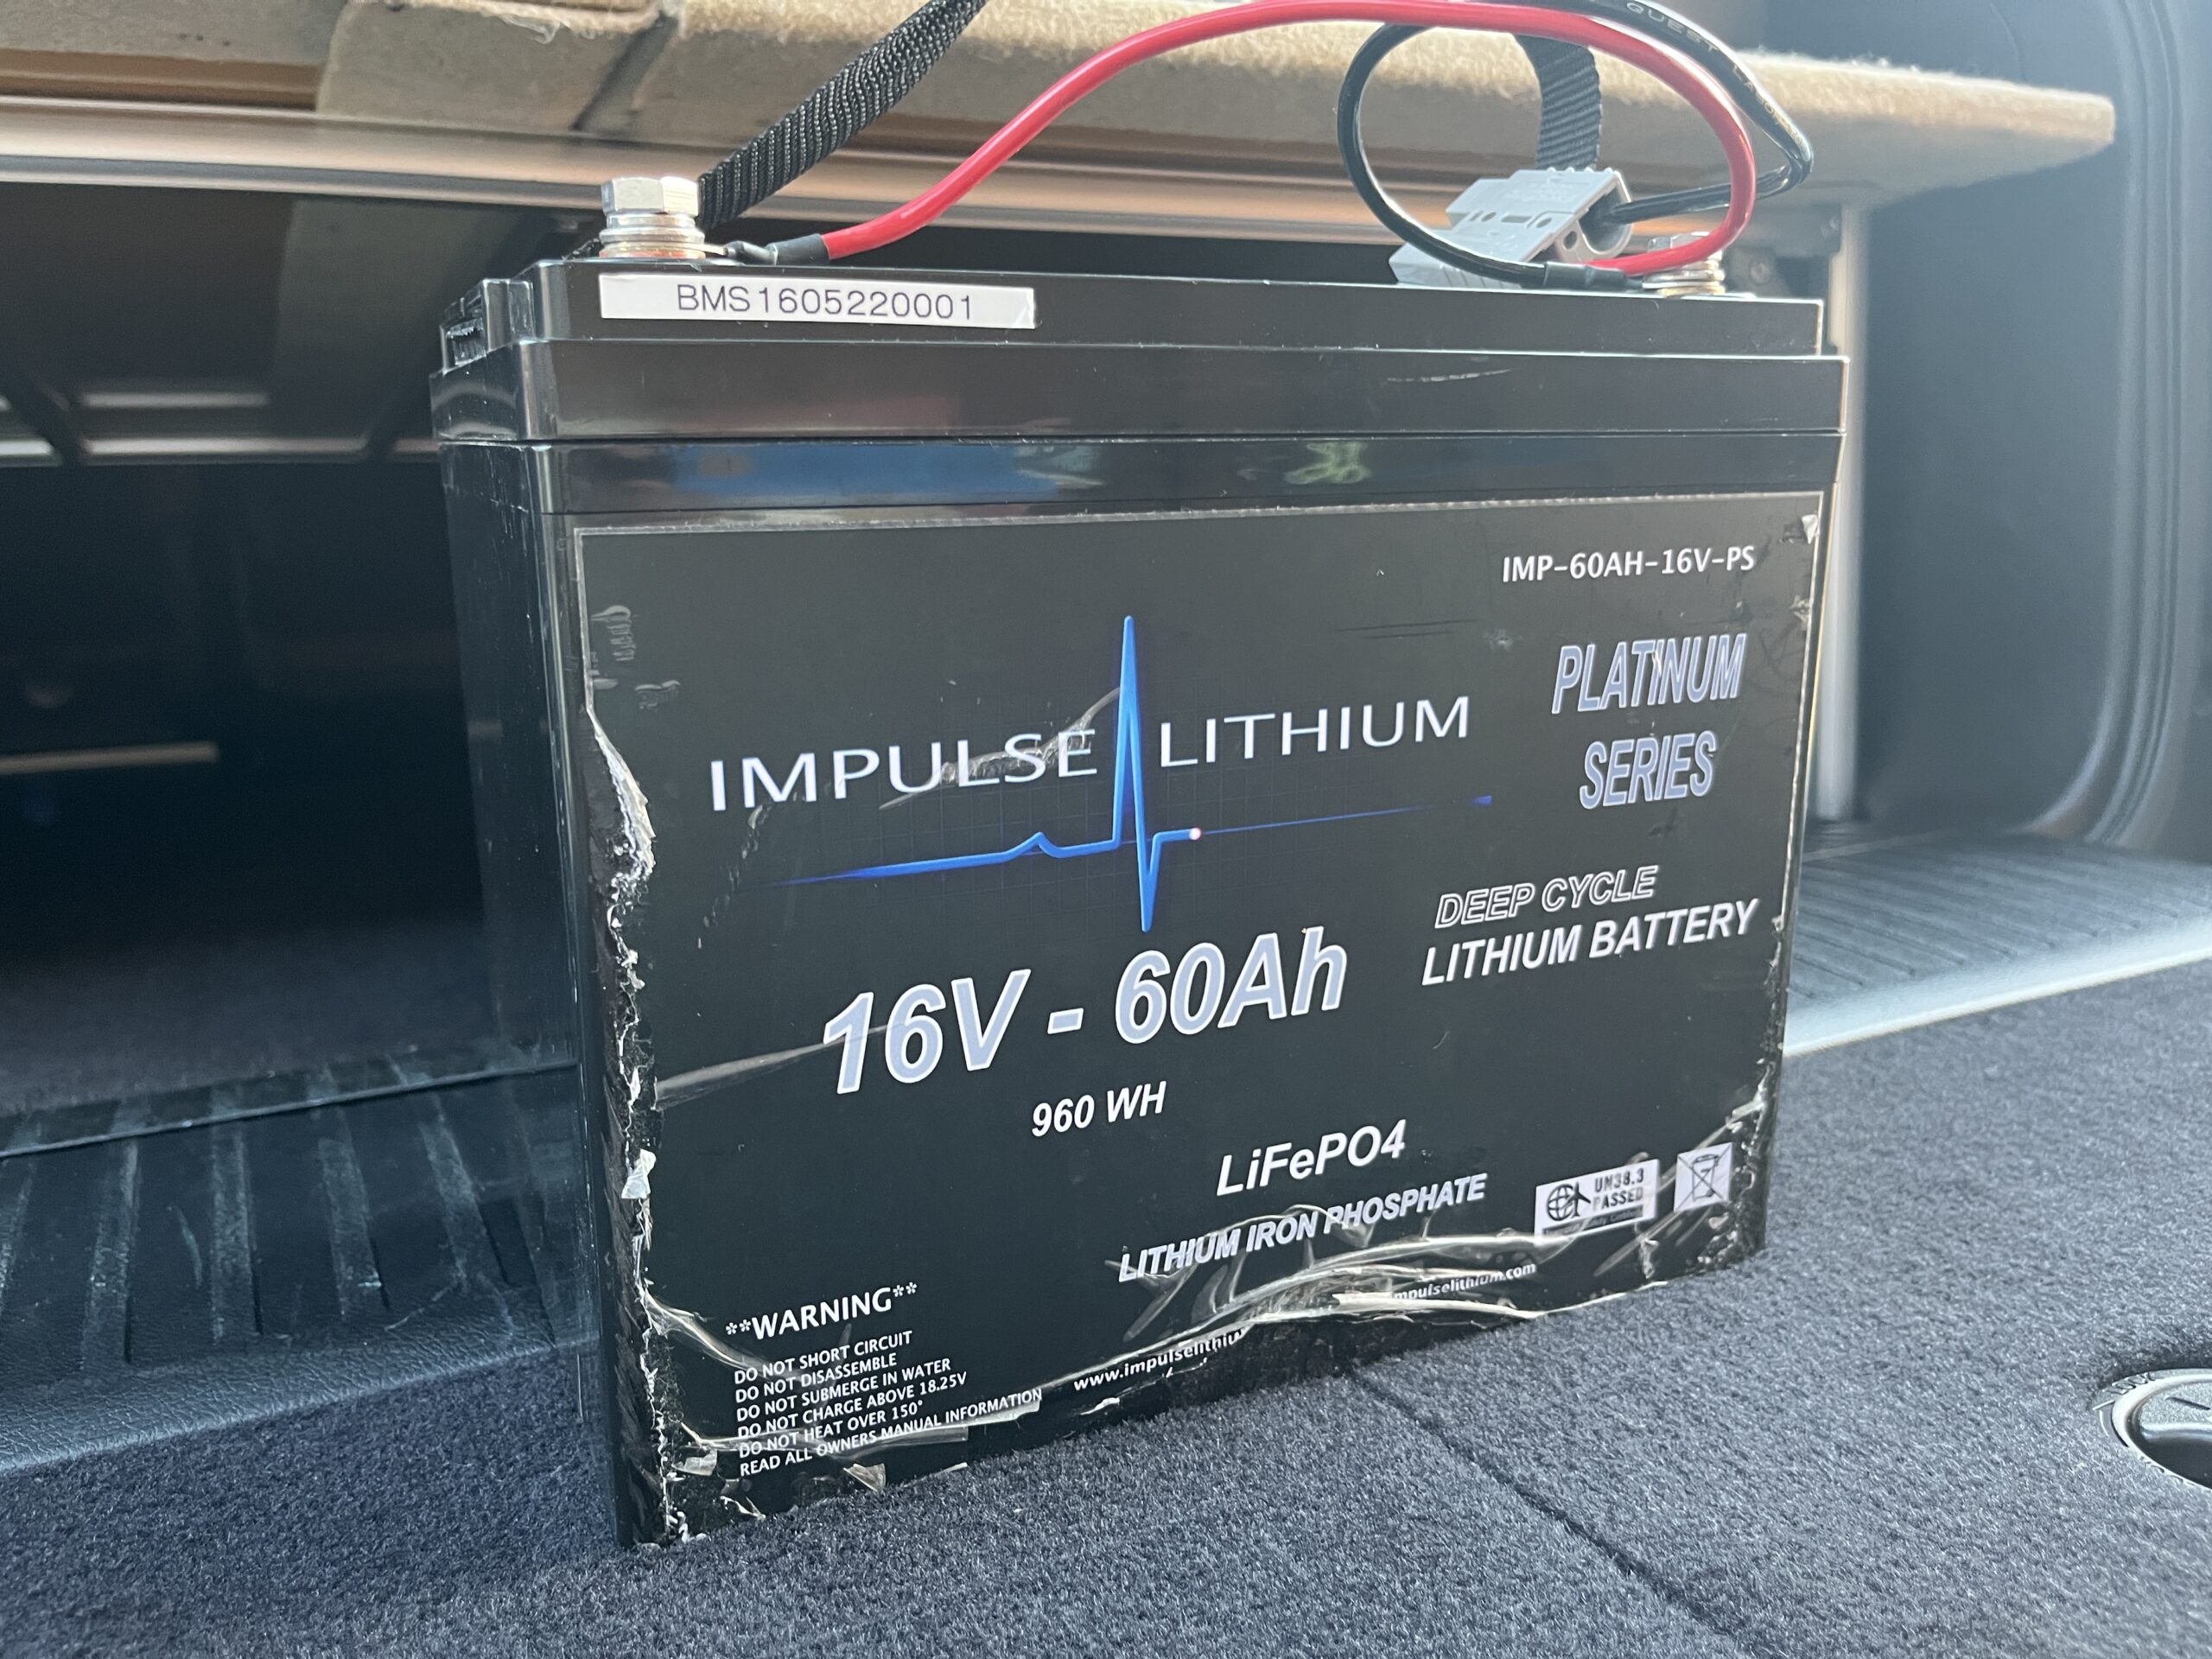 Impulse Lithium 16v 60Ah Platinum Series - Lithium Battery